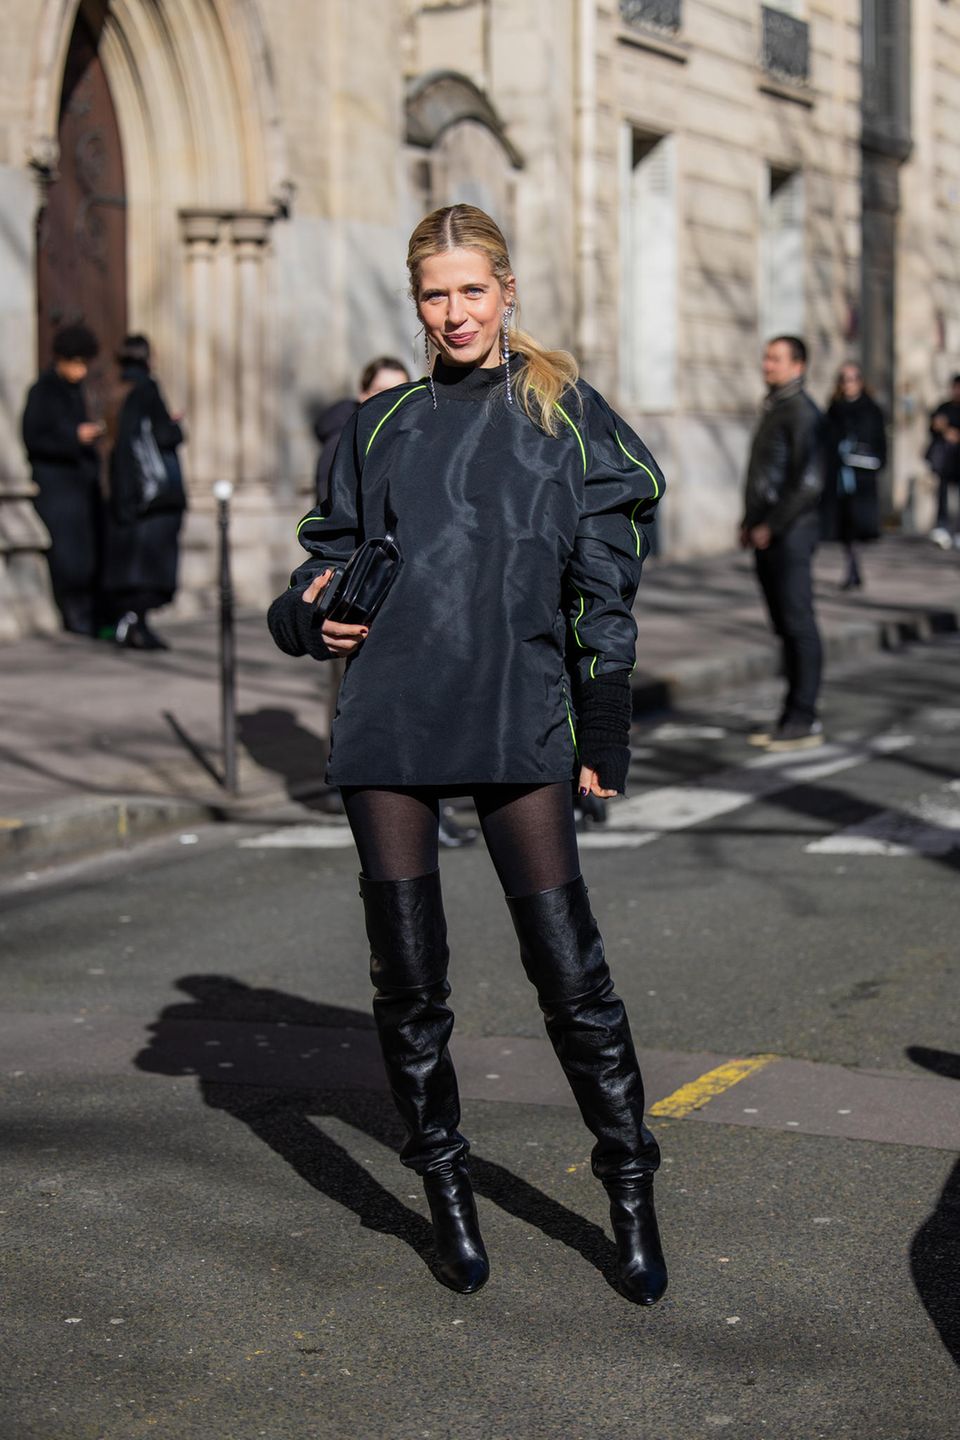 Sportlich, stylisch, sexy: Im Oversize-Top mit neongrünen-Streifen samt Stulpen und schwarzen Overknees macht Kunstsammlerin Christine Würfel-Stauss in Paris eine tolle Figur.